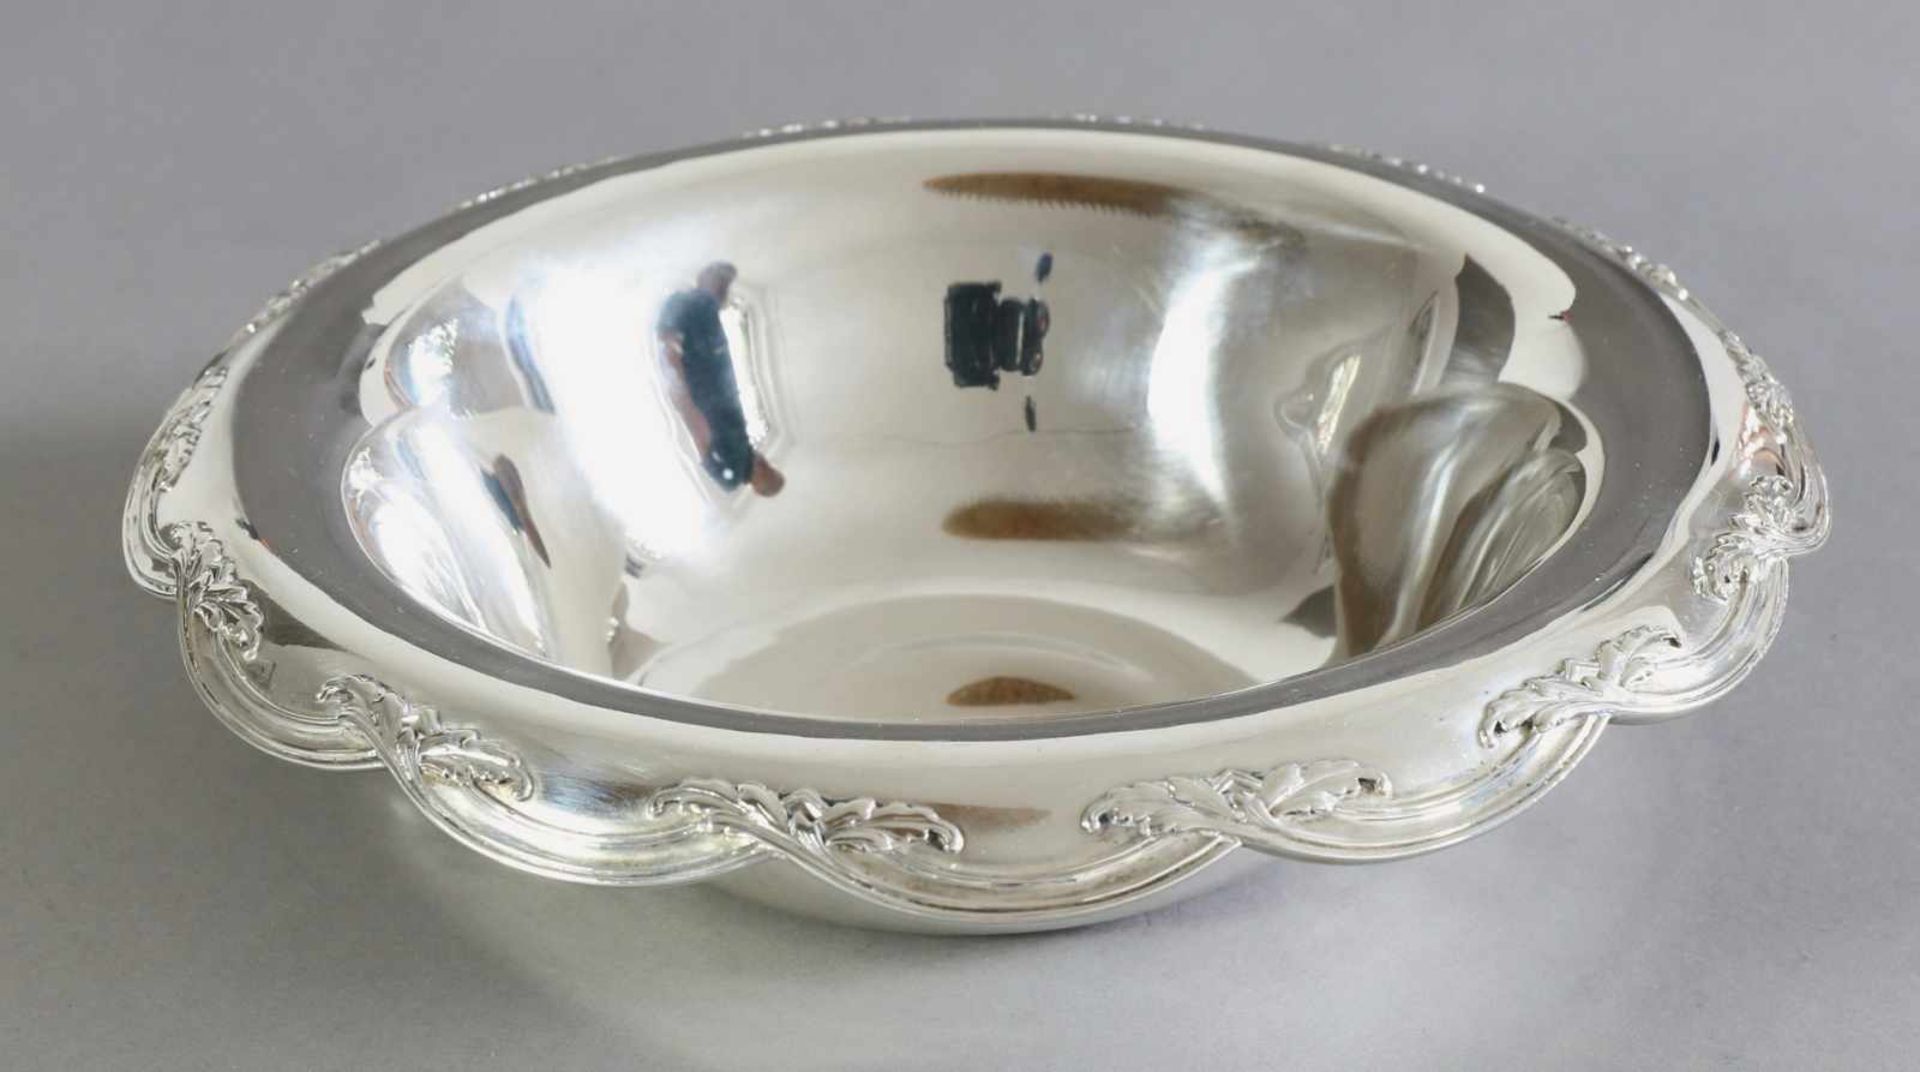 Tiffany & Co., New York1907-1947Schale. Design 1898/1899. Ausführung 1907-1947. Silber. Am Rand